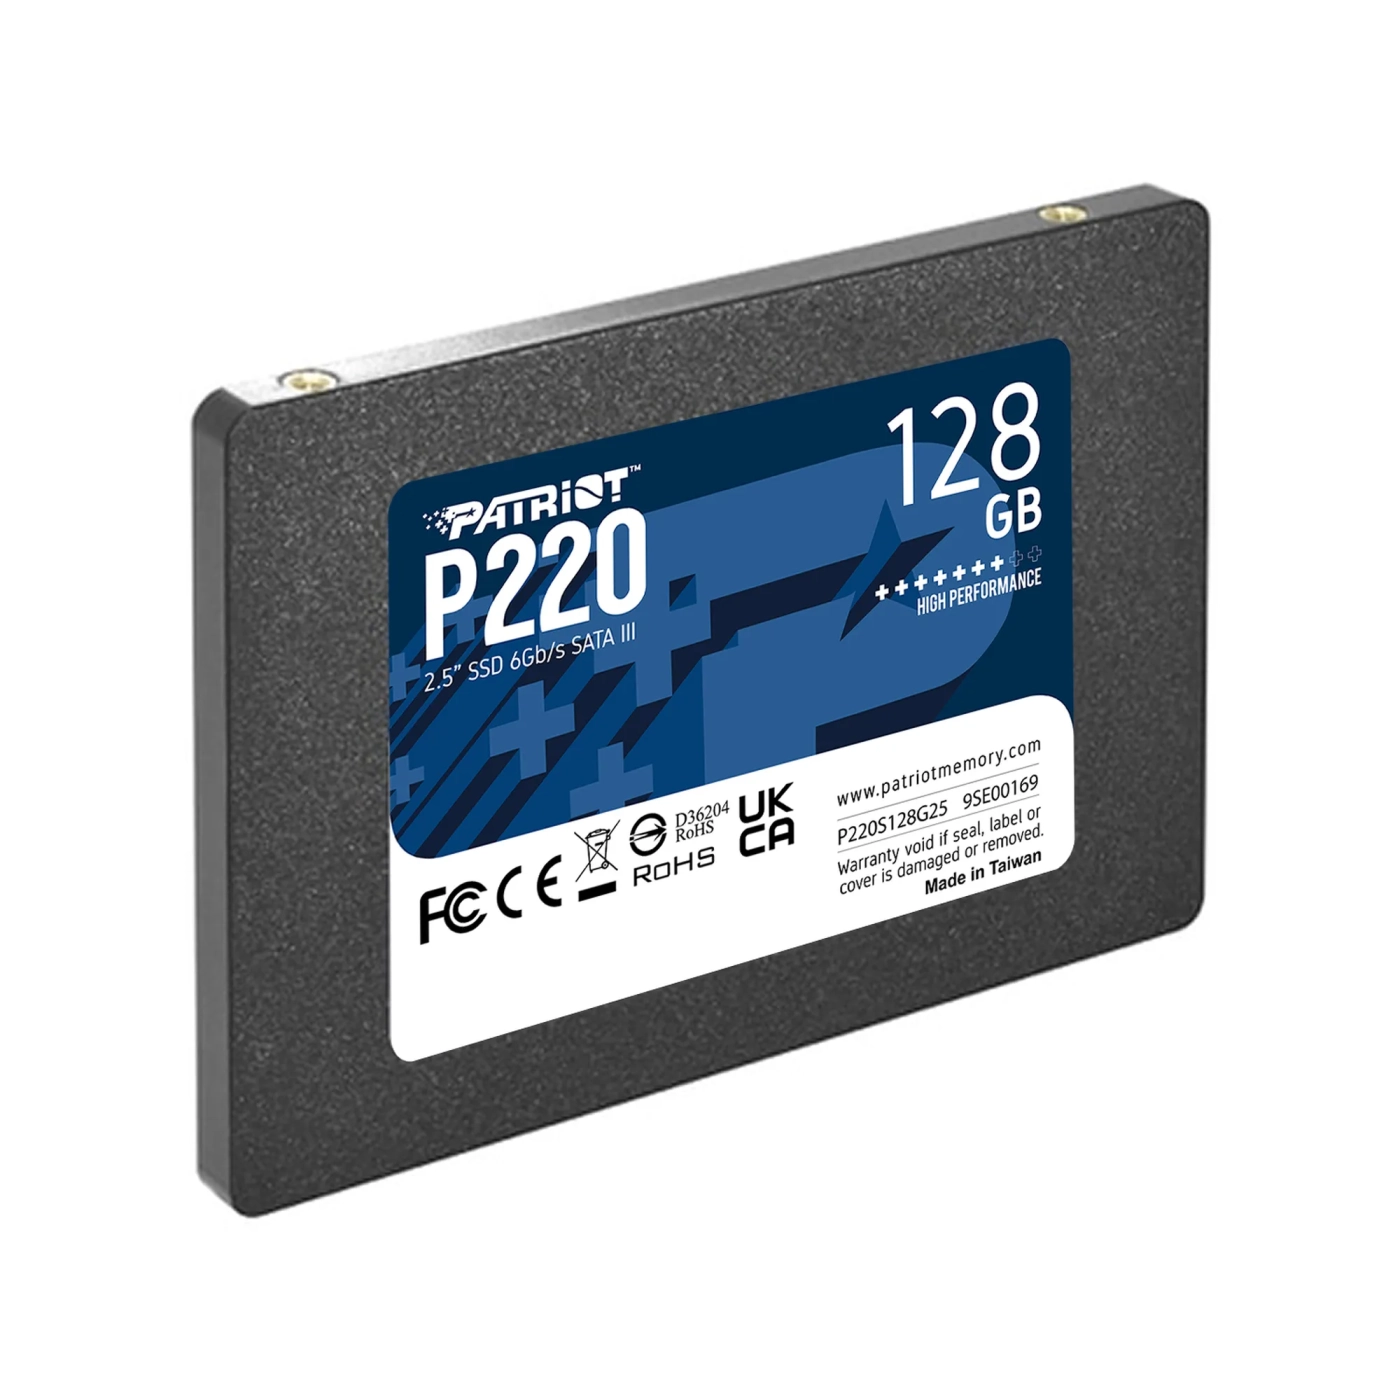 Купить SSD диск Patriot P220 128GB 2.5" SATA (P220S128G25) - фото 3